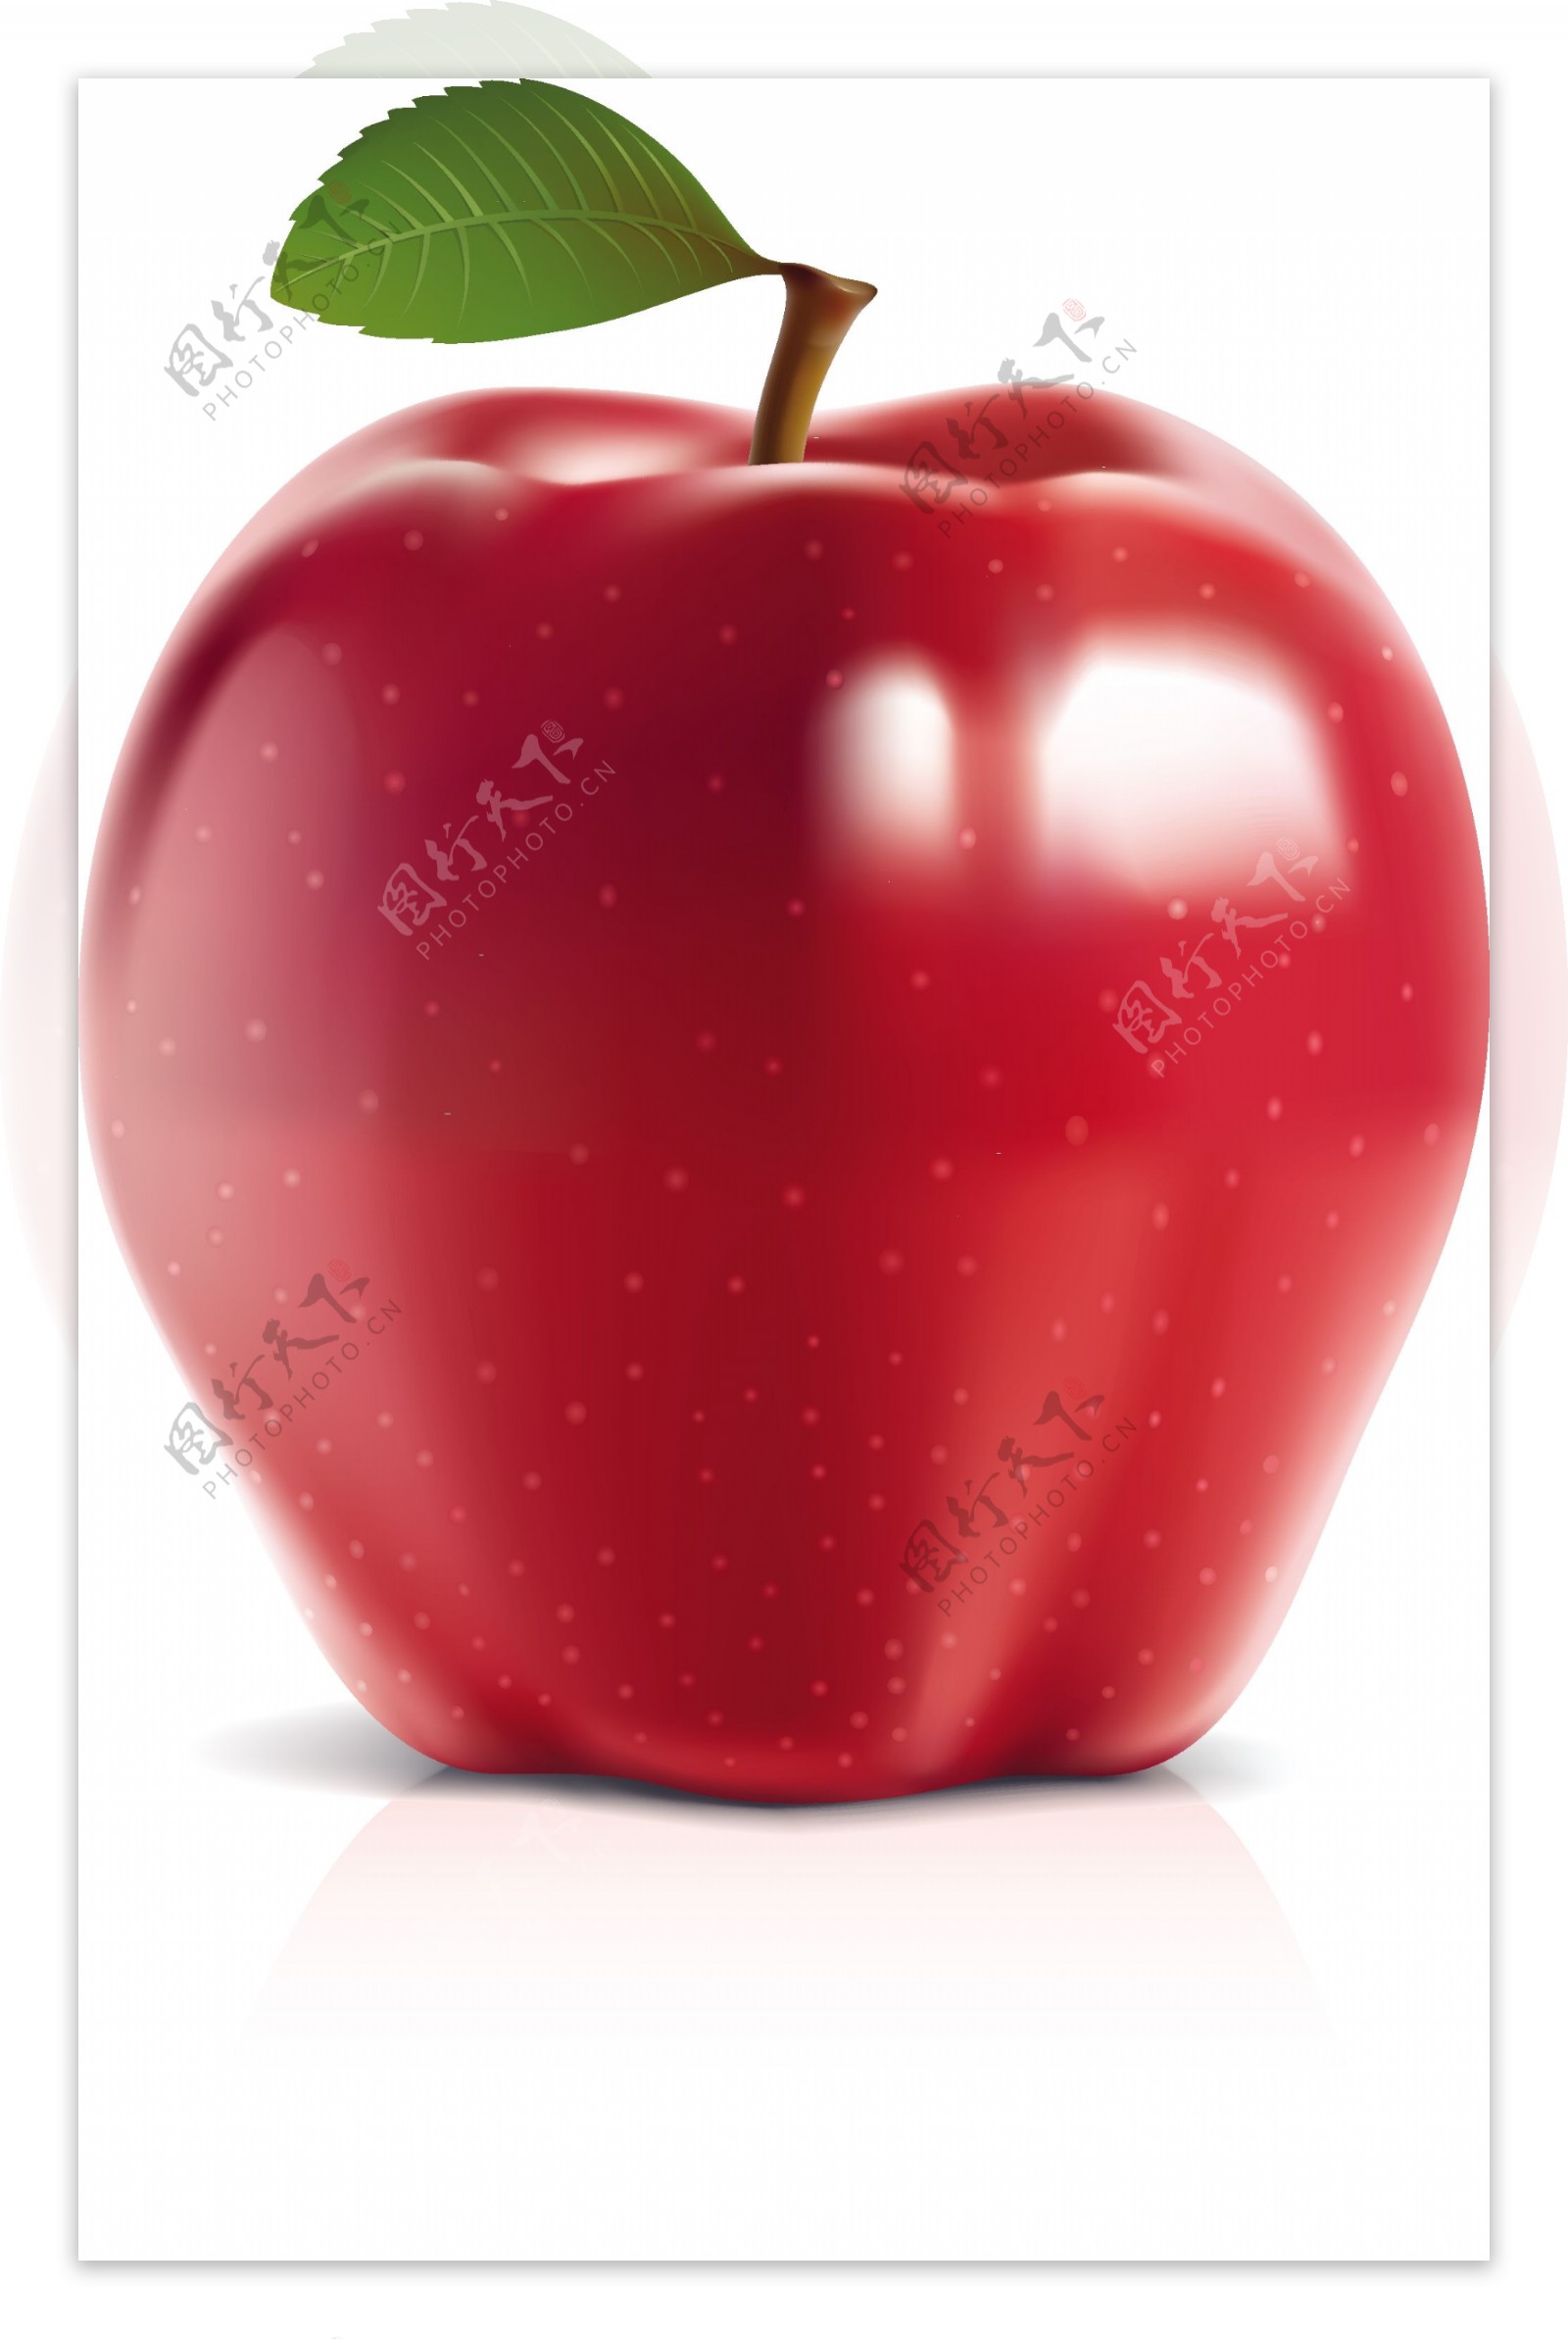 可与照片媲美的青苹果和红苹果矢量素材